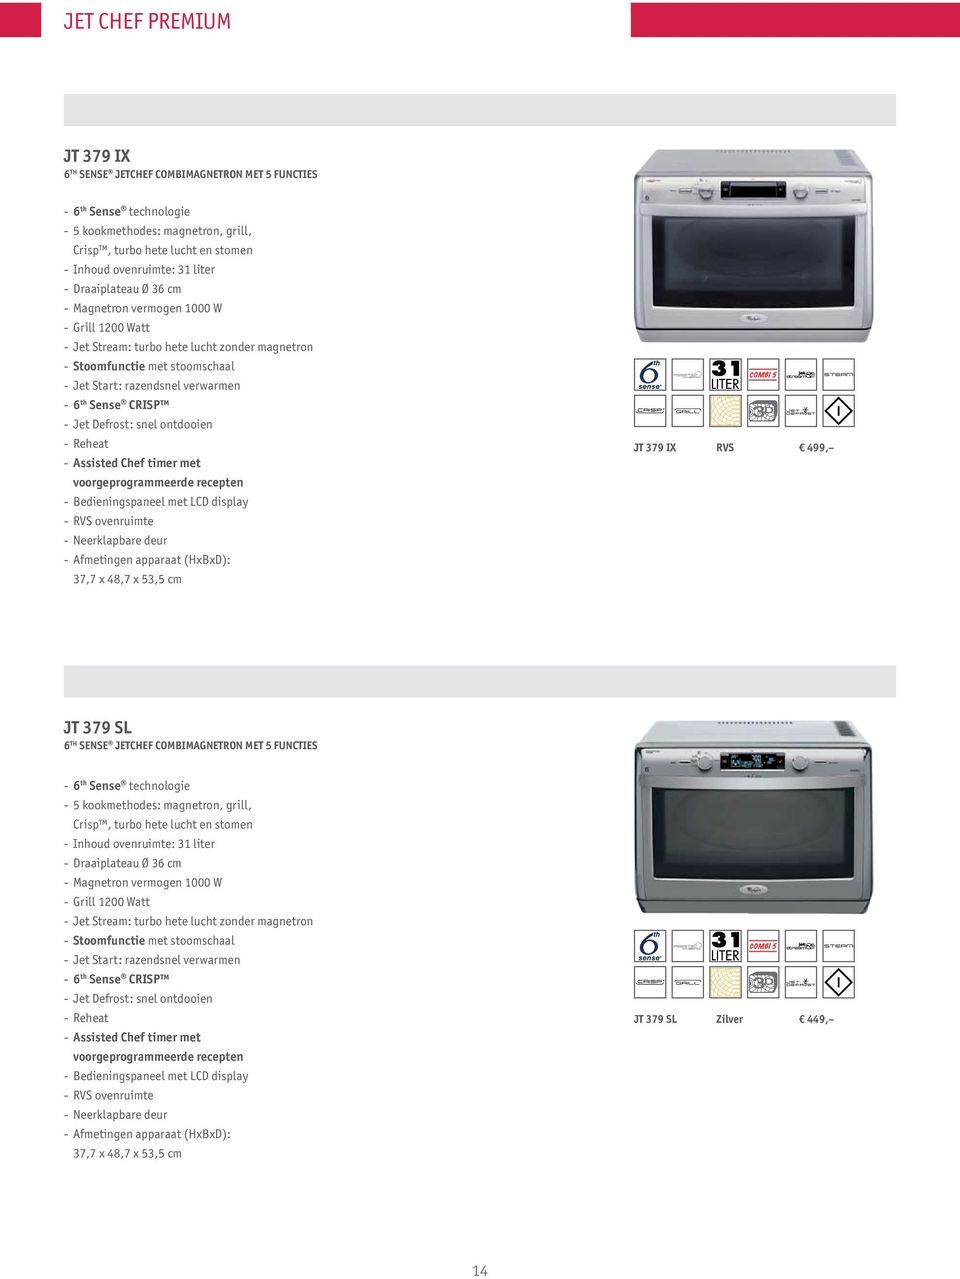 ontdooien - Reheat - Assisted Chef timer met voorgeprogrammeerde recepten - Bedieningspaneel met LCD display - RVS ovenruimte - Neerklapbare deur - Afmetingen apparaat (HxBxD): 37,7 x 48,7 x 53,5 cm